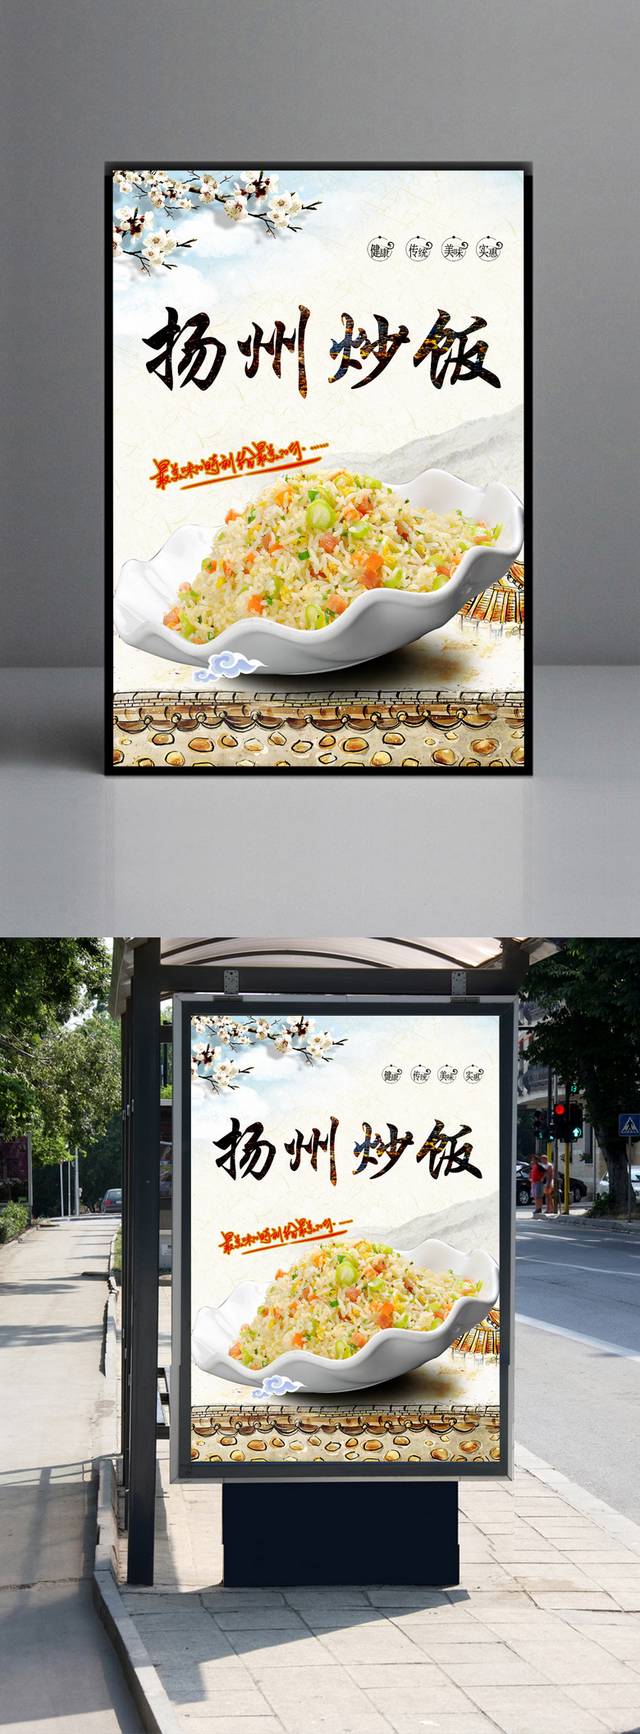 扬州炒饭美食海报宣传设计